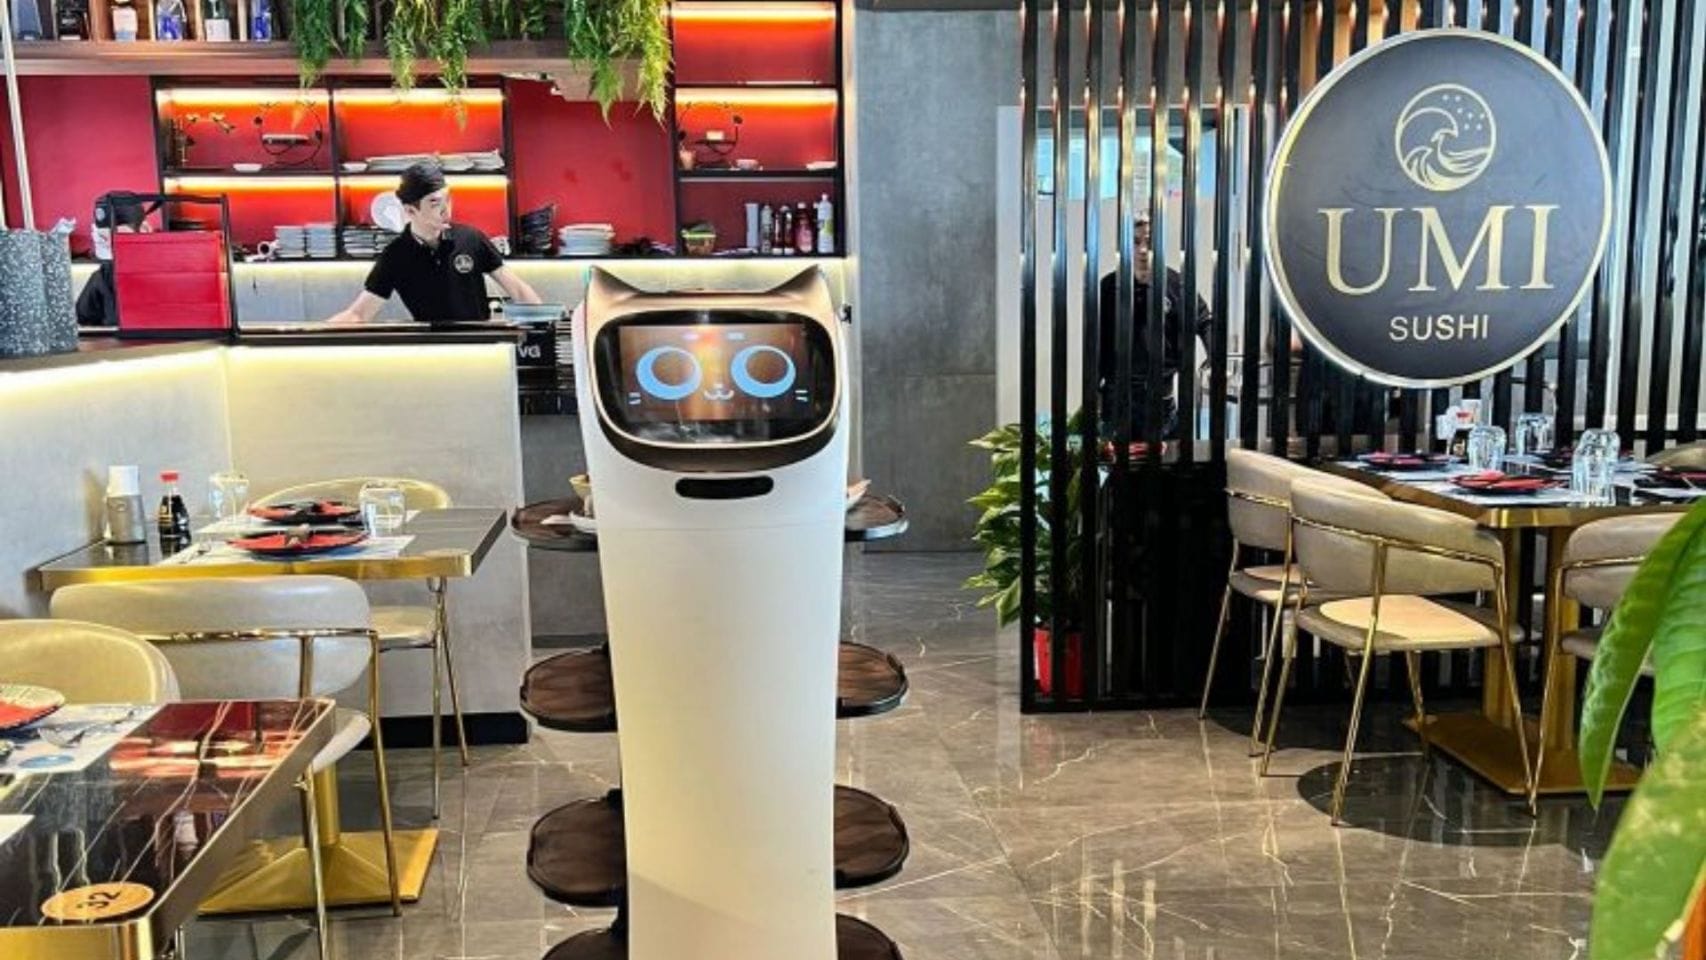 Camarero robot del restaurante Umi Sushi, en Vigo.